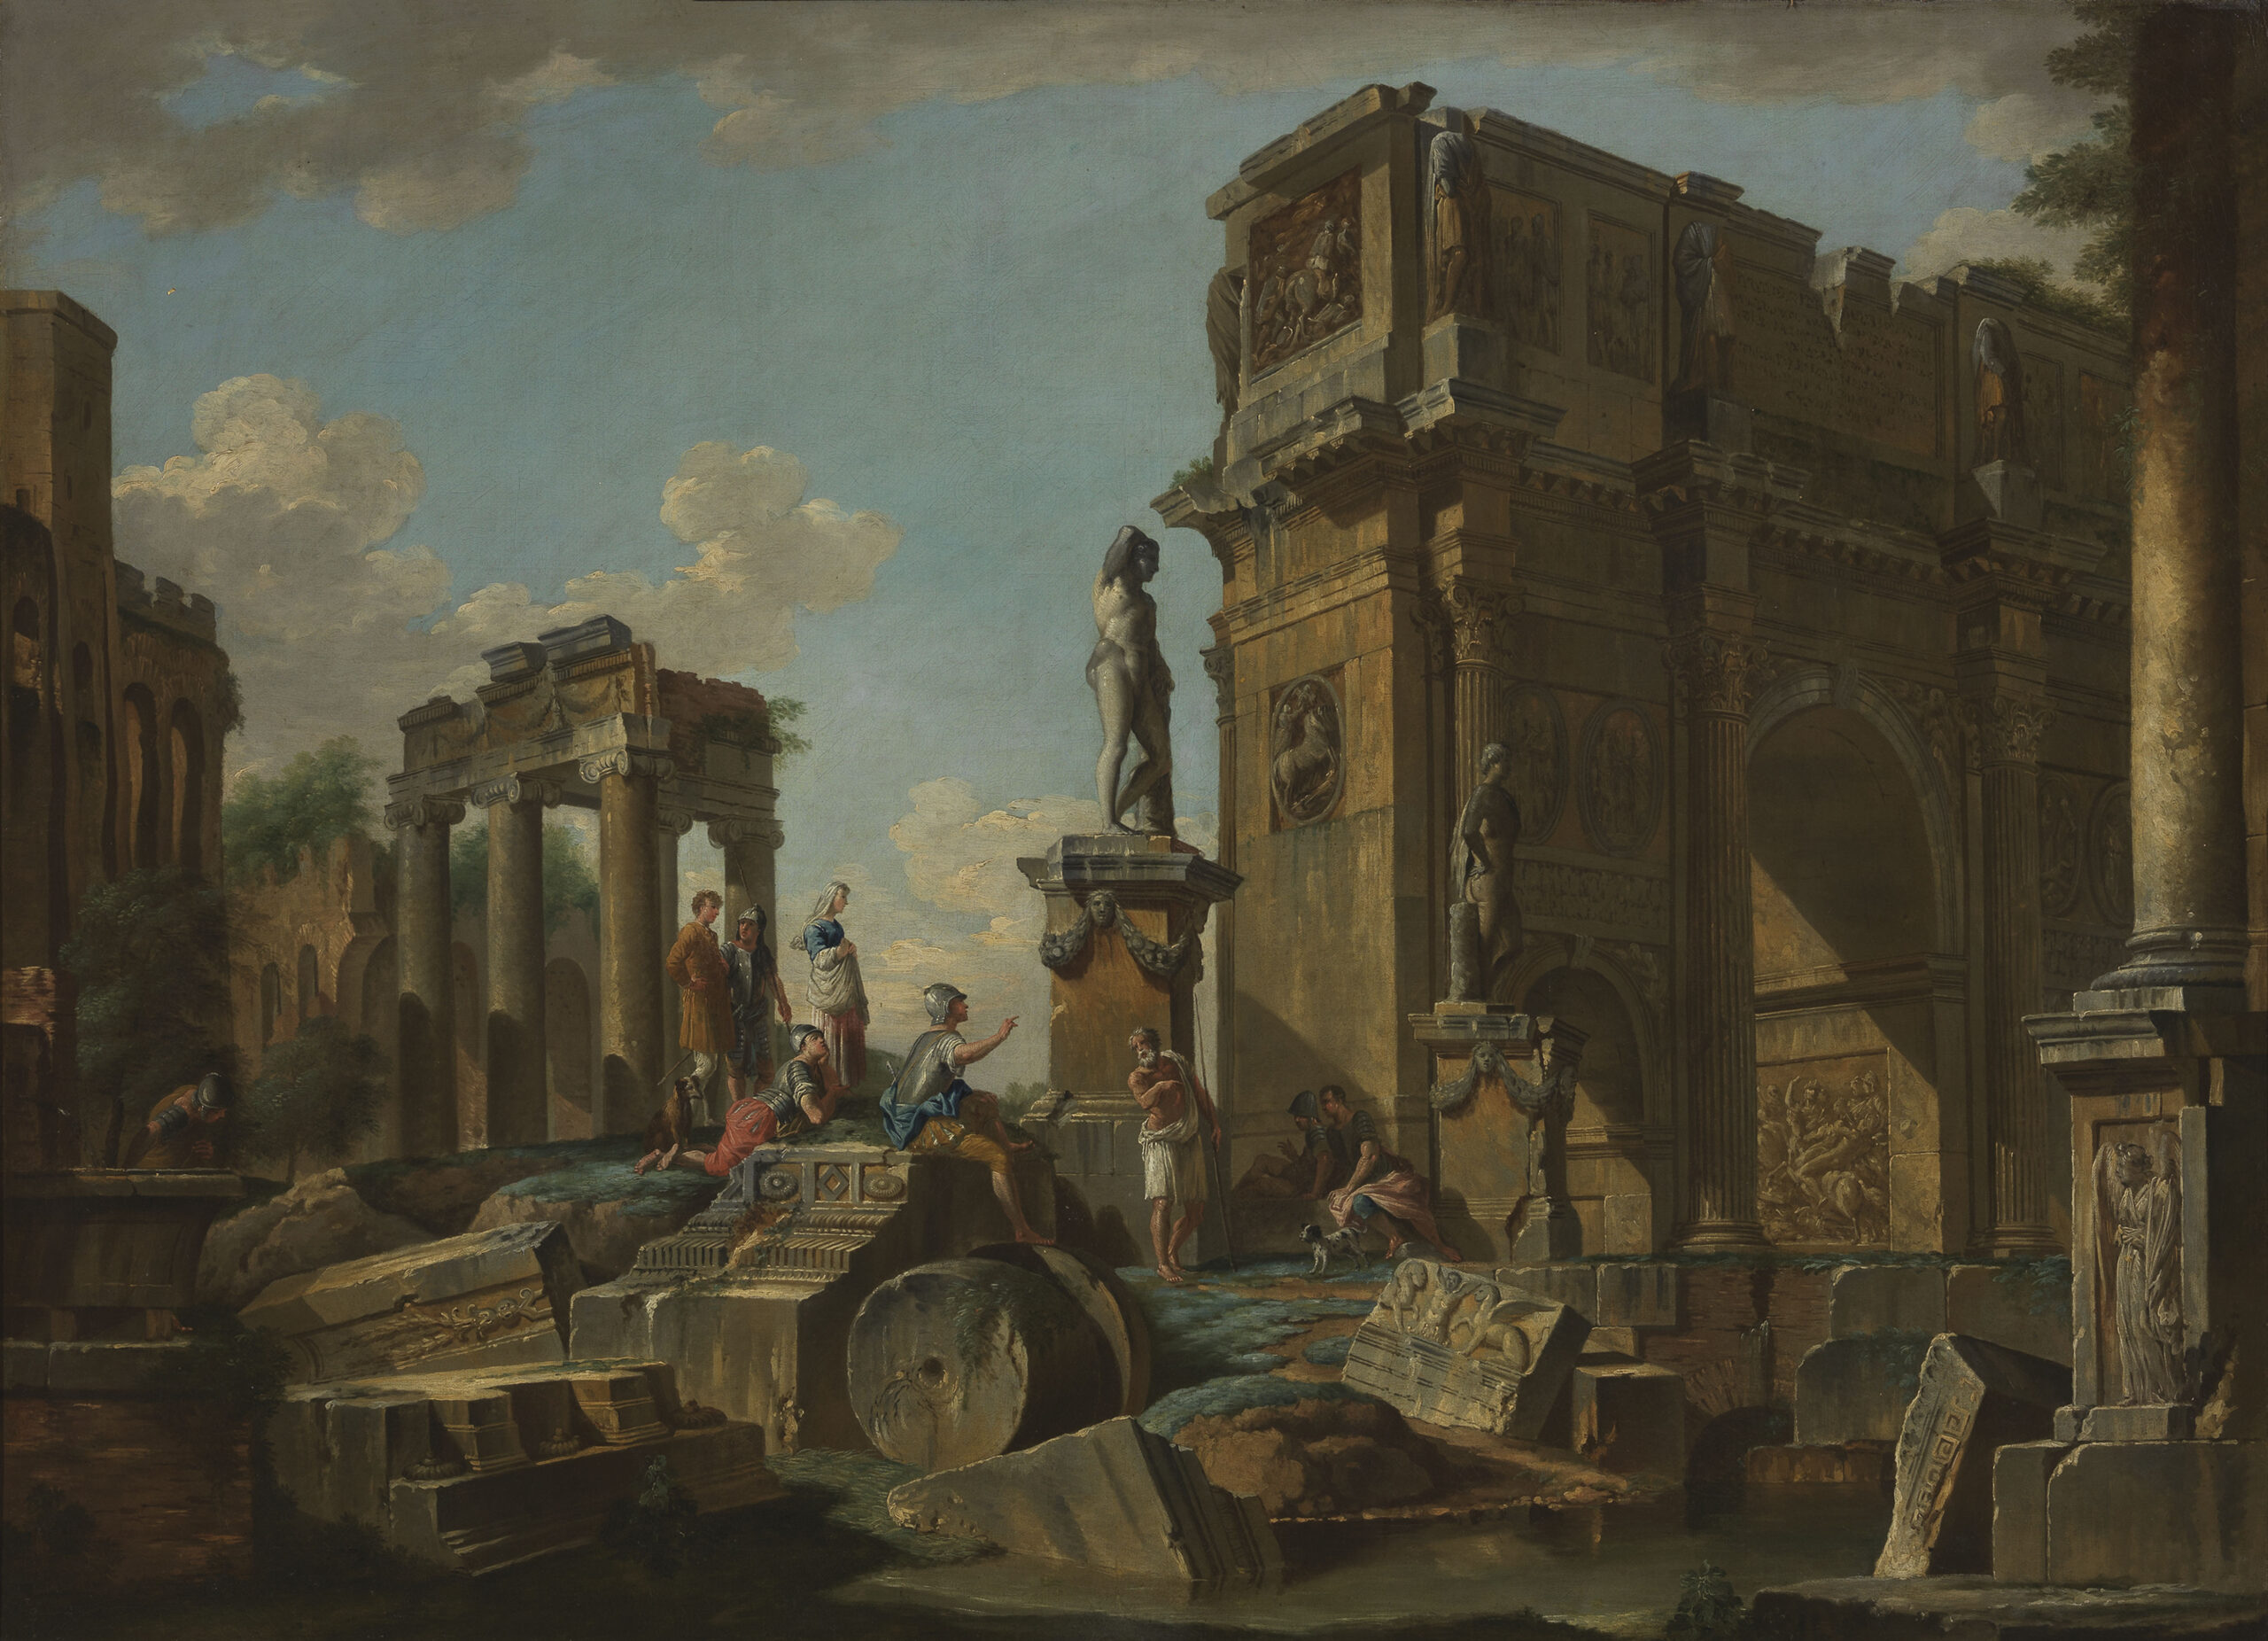 Lotto 122, Giovanni Paolo Panini, Capriccio Architettonico con l'Arco di Costantino, olio su tela, cm 100 x 137